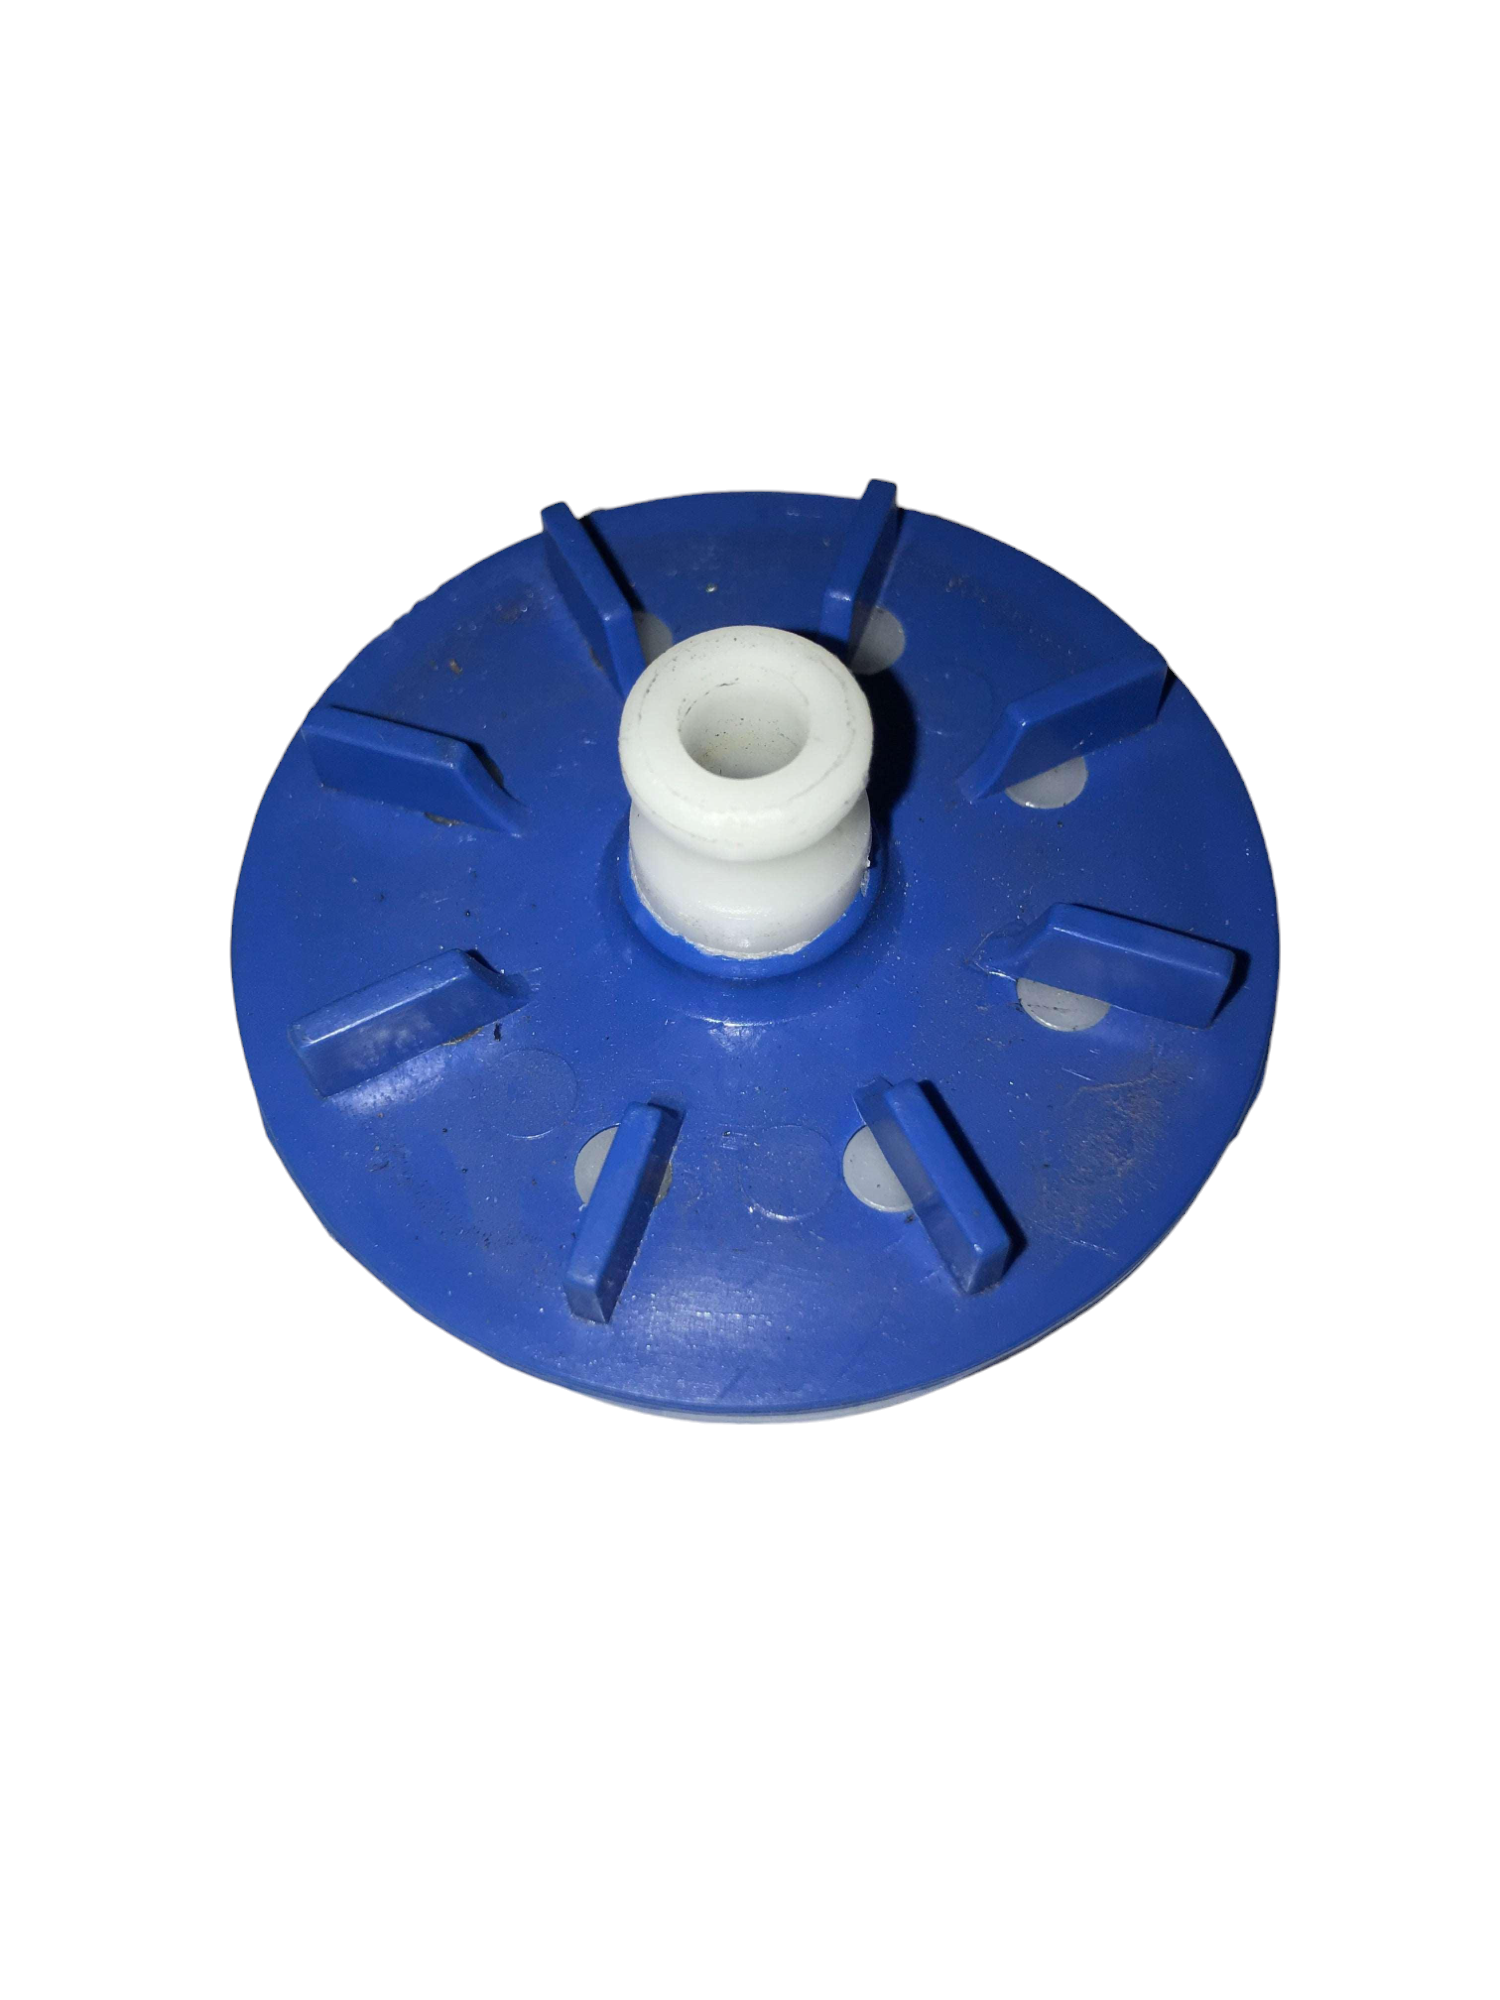 RBRA017  Pump Blue Impeller 12-20 AL 60 Hz. 33900-01204